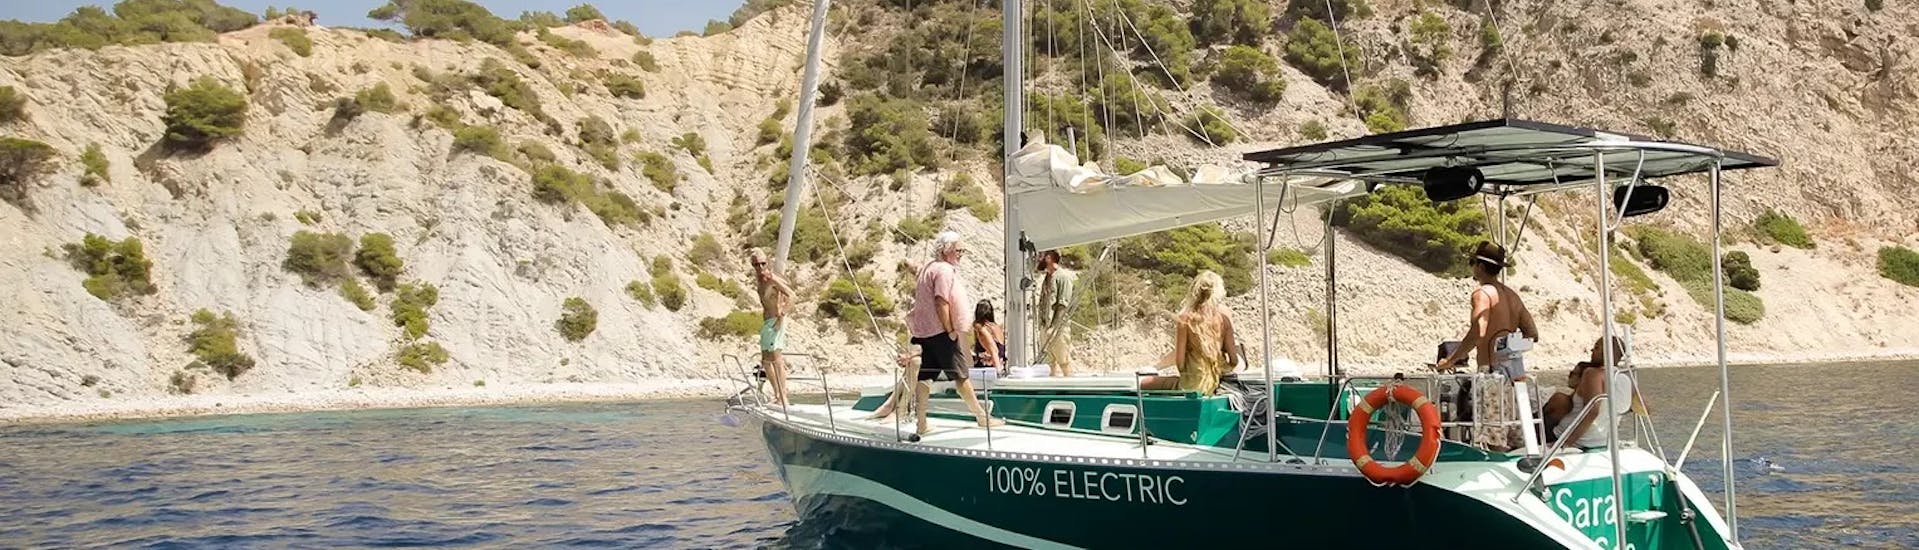 El monocasco está explorando la costa alrededor de Ibiza durante la Excursión Privada en Barco de Día Completo por Ibiza con Natación y Snorkel con La Bella Verde Ibiza.